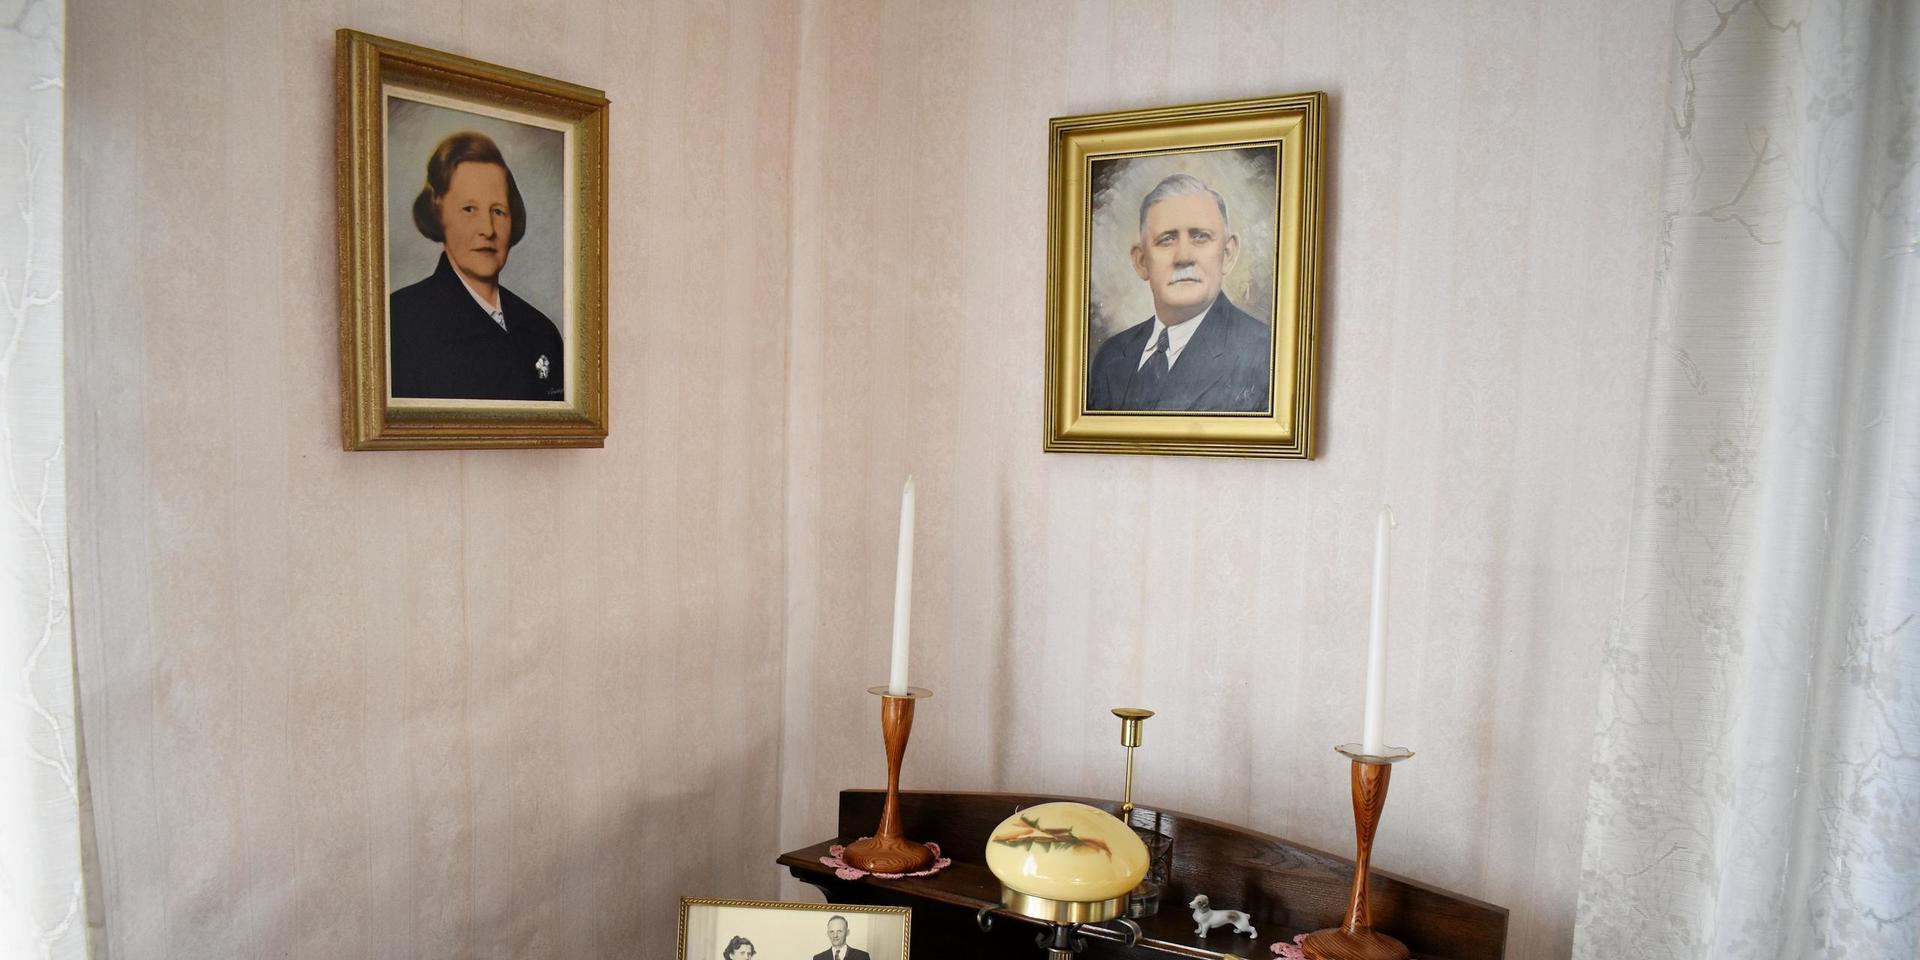 I finrummet hänger målade porträtt av husets ursprungliga ägare Hilma och Karl Pihl. Hilma levde som änka i i huset i nästan 40 år efter att maken Karl hade gått bort i en hjärtinfarkt.